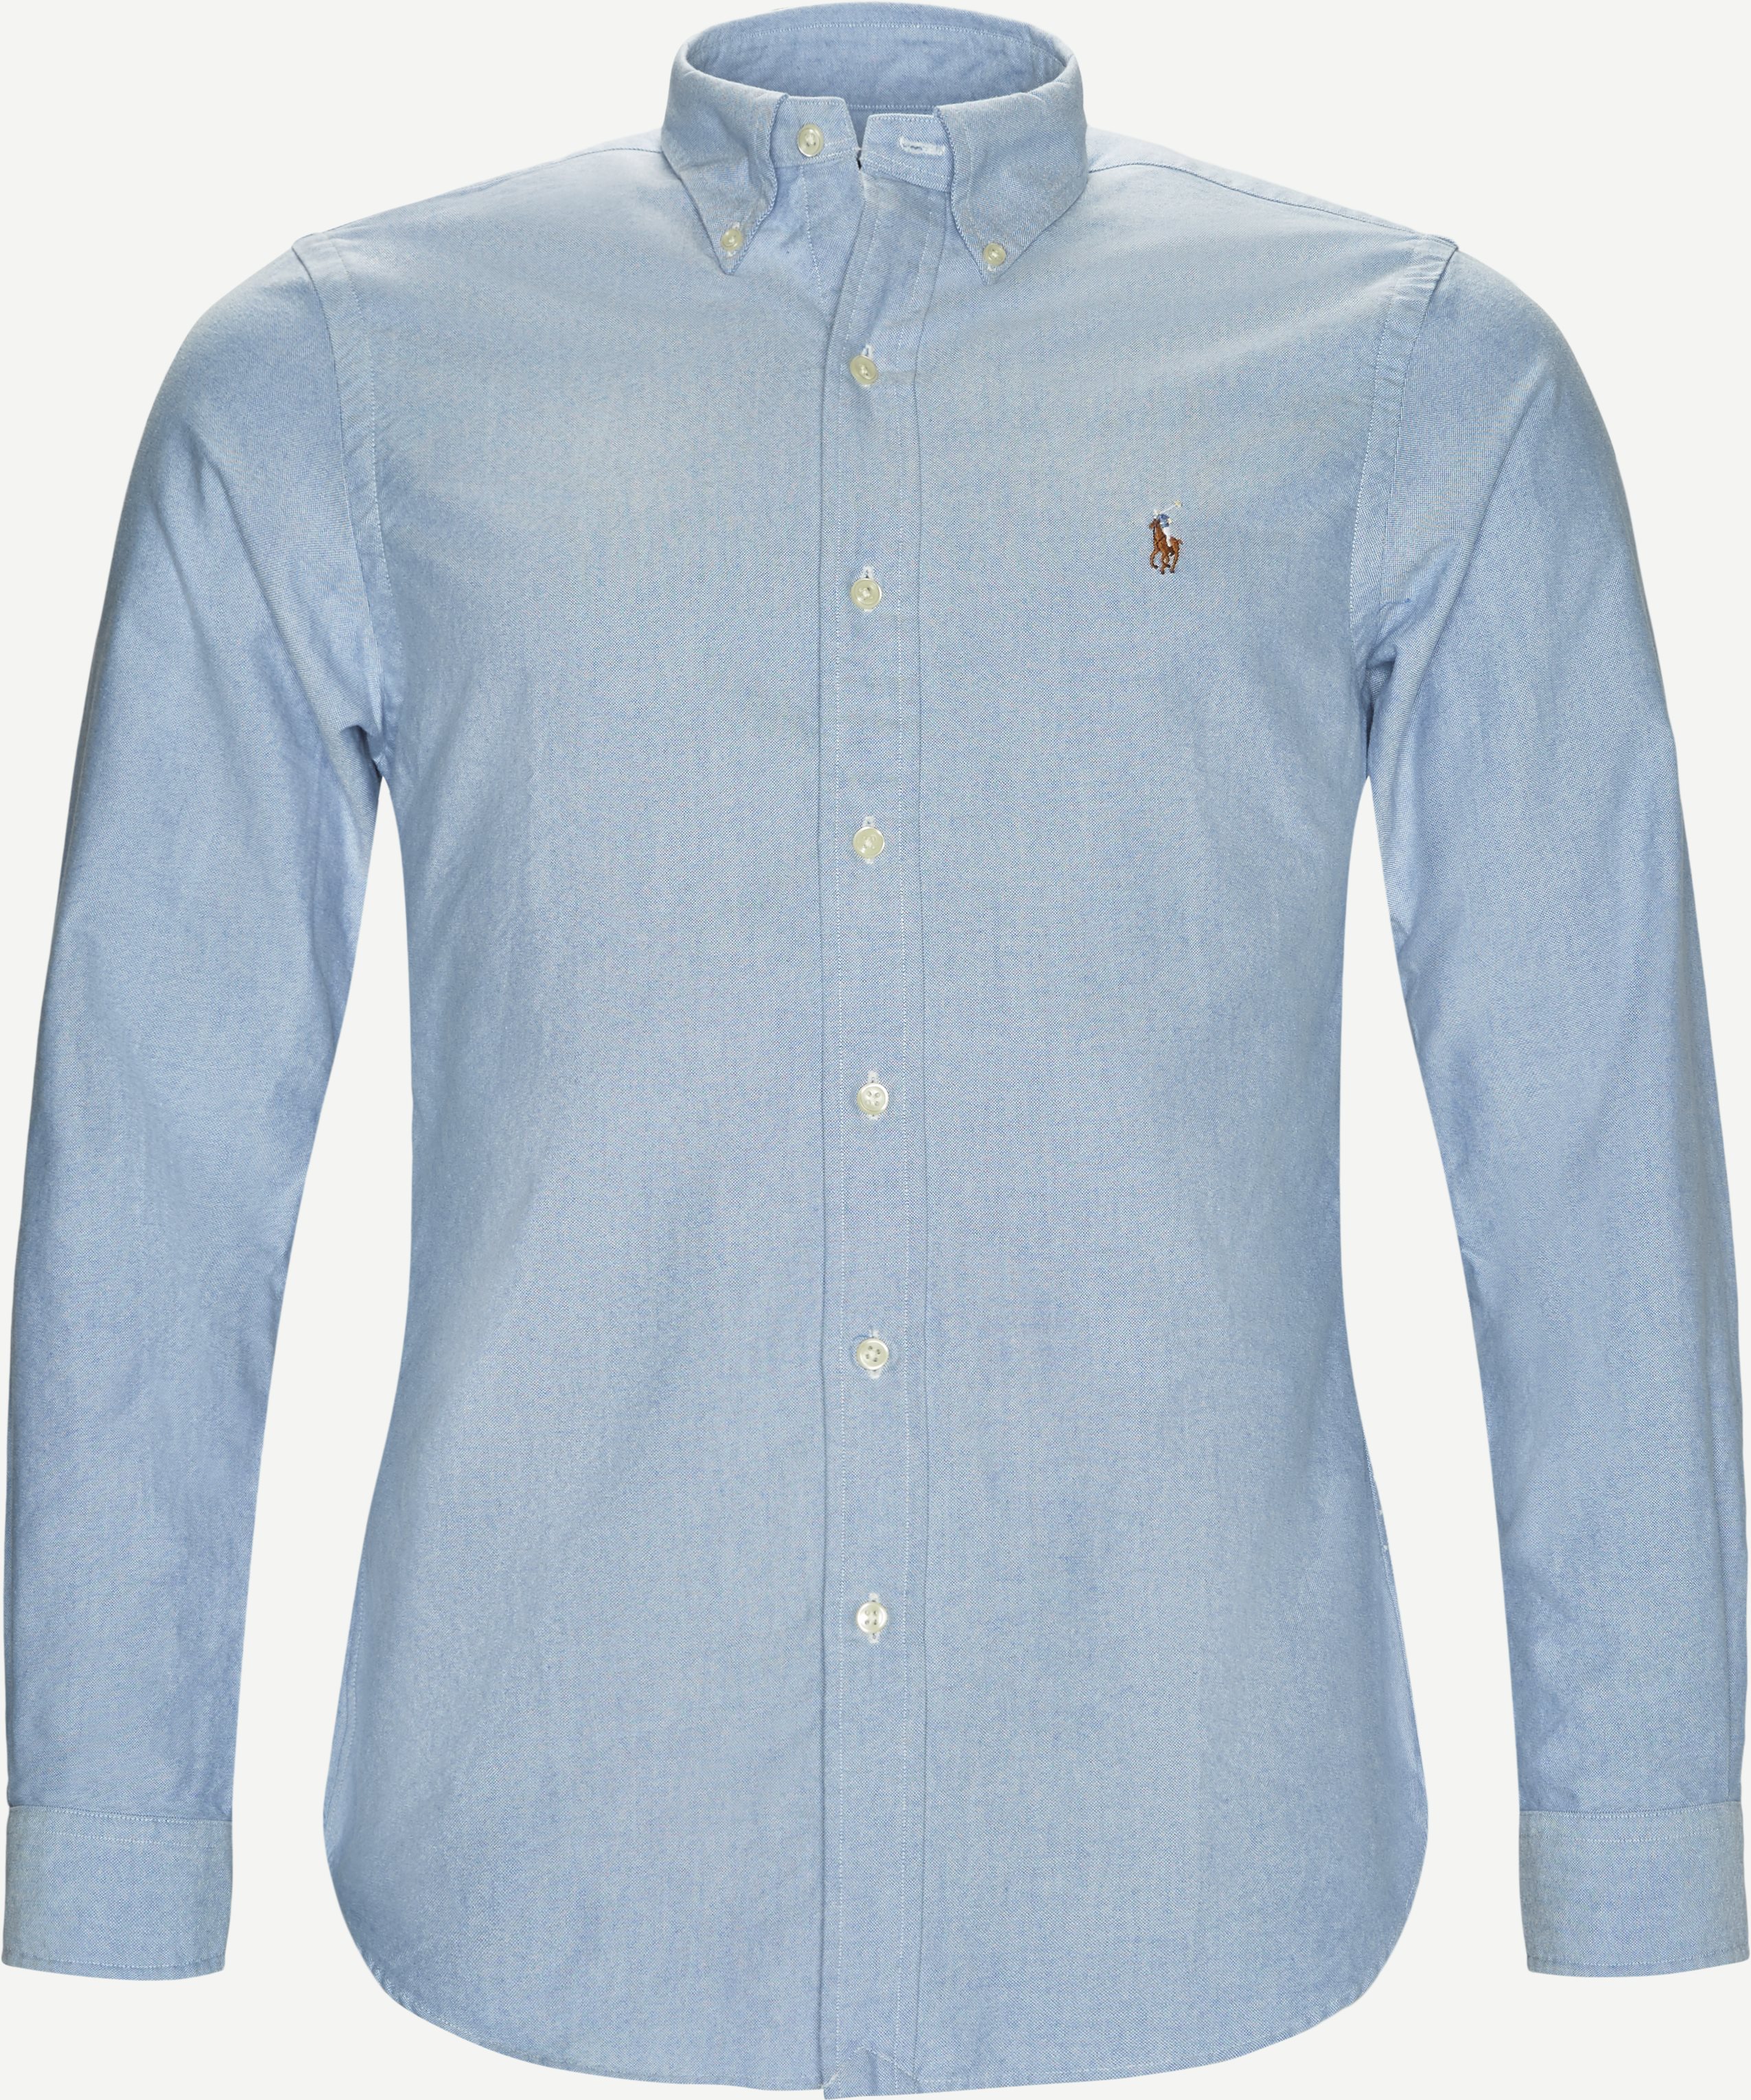 Polo Ralph Lauren Shirts 710549084/710792041 Blue